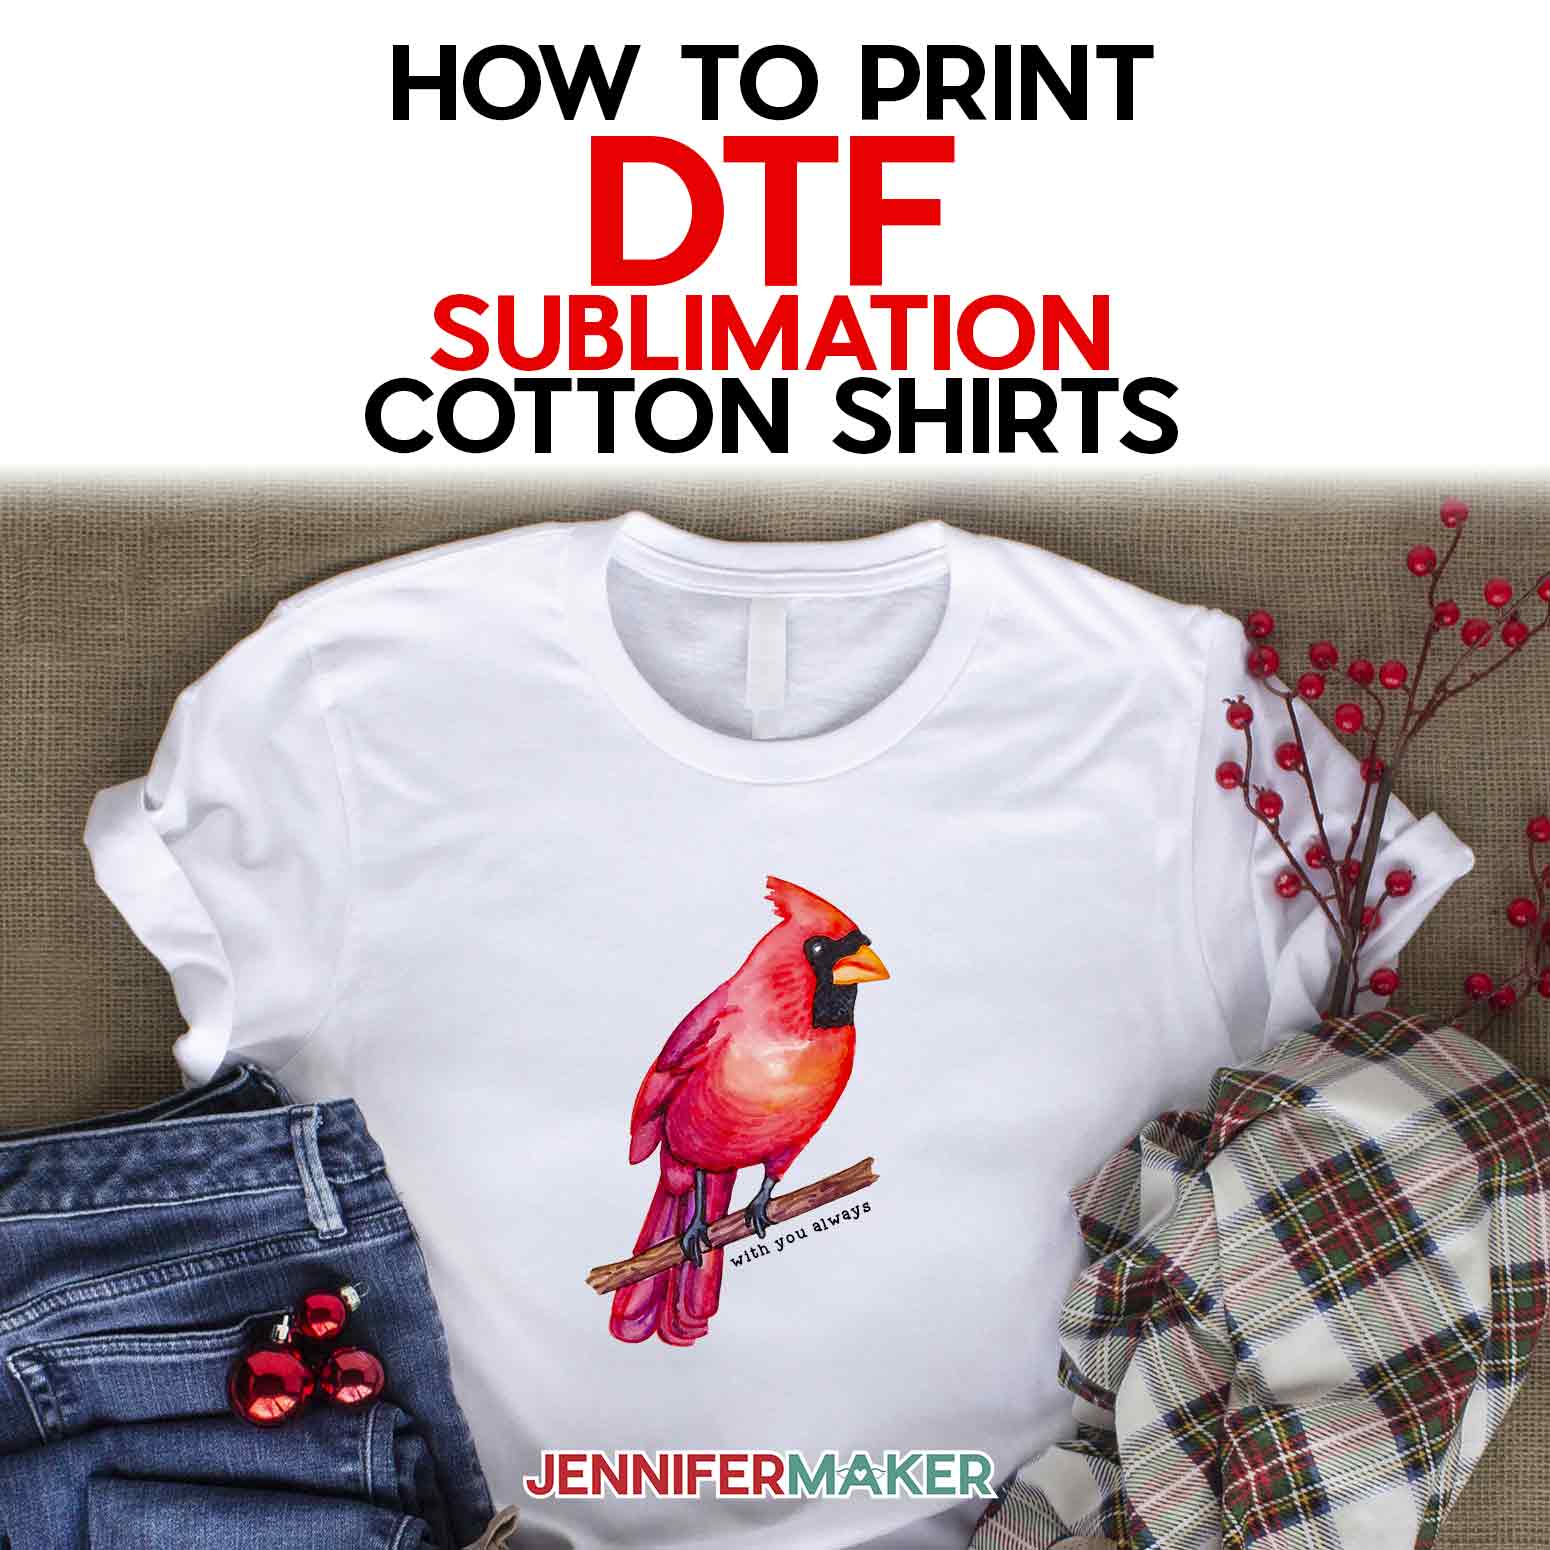 DTF T-Shirt Printing at Home on COTTON: Sublimation Print Hack! - Jennifer  Maker